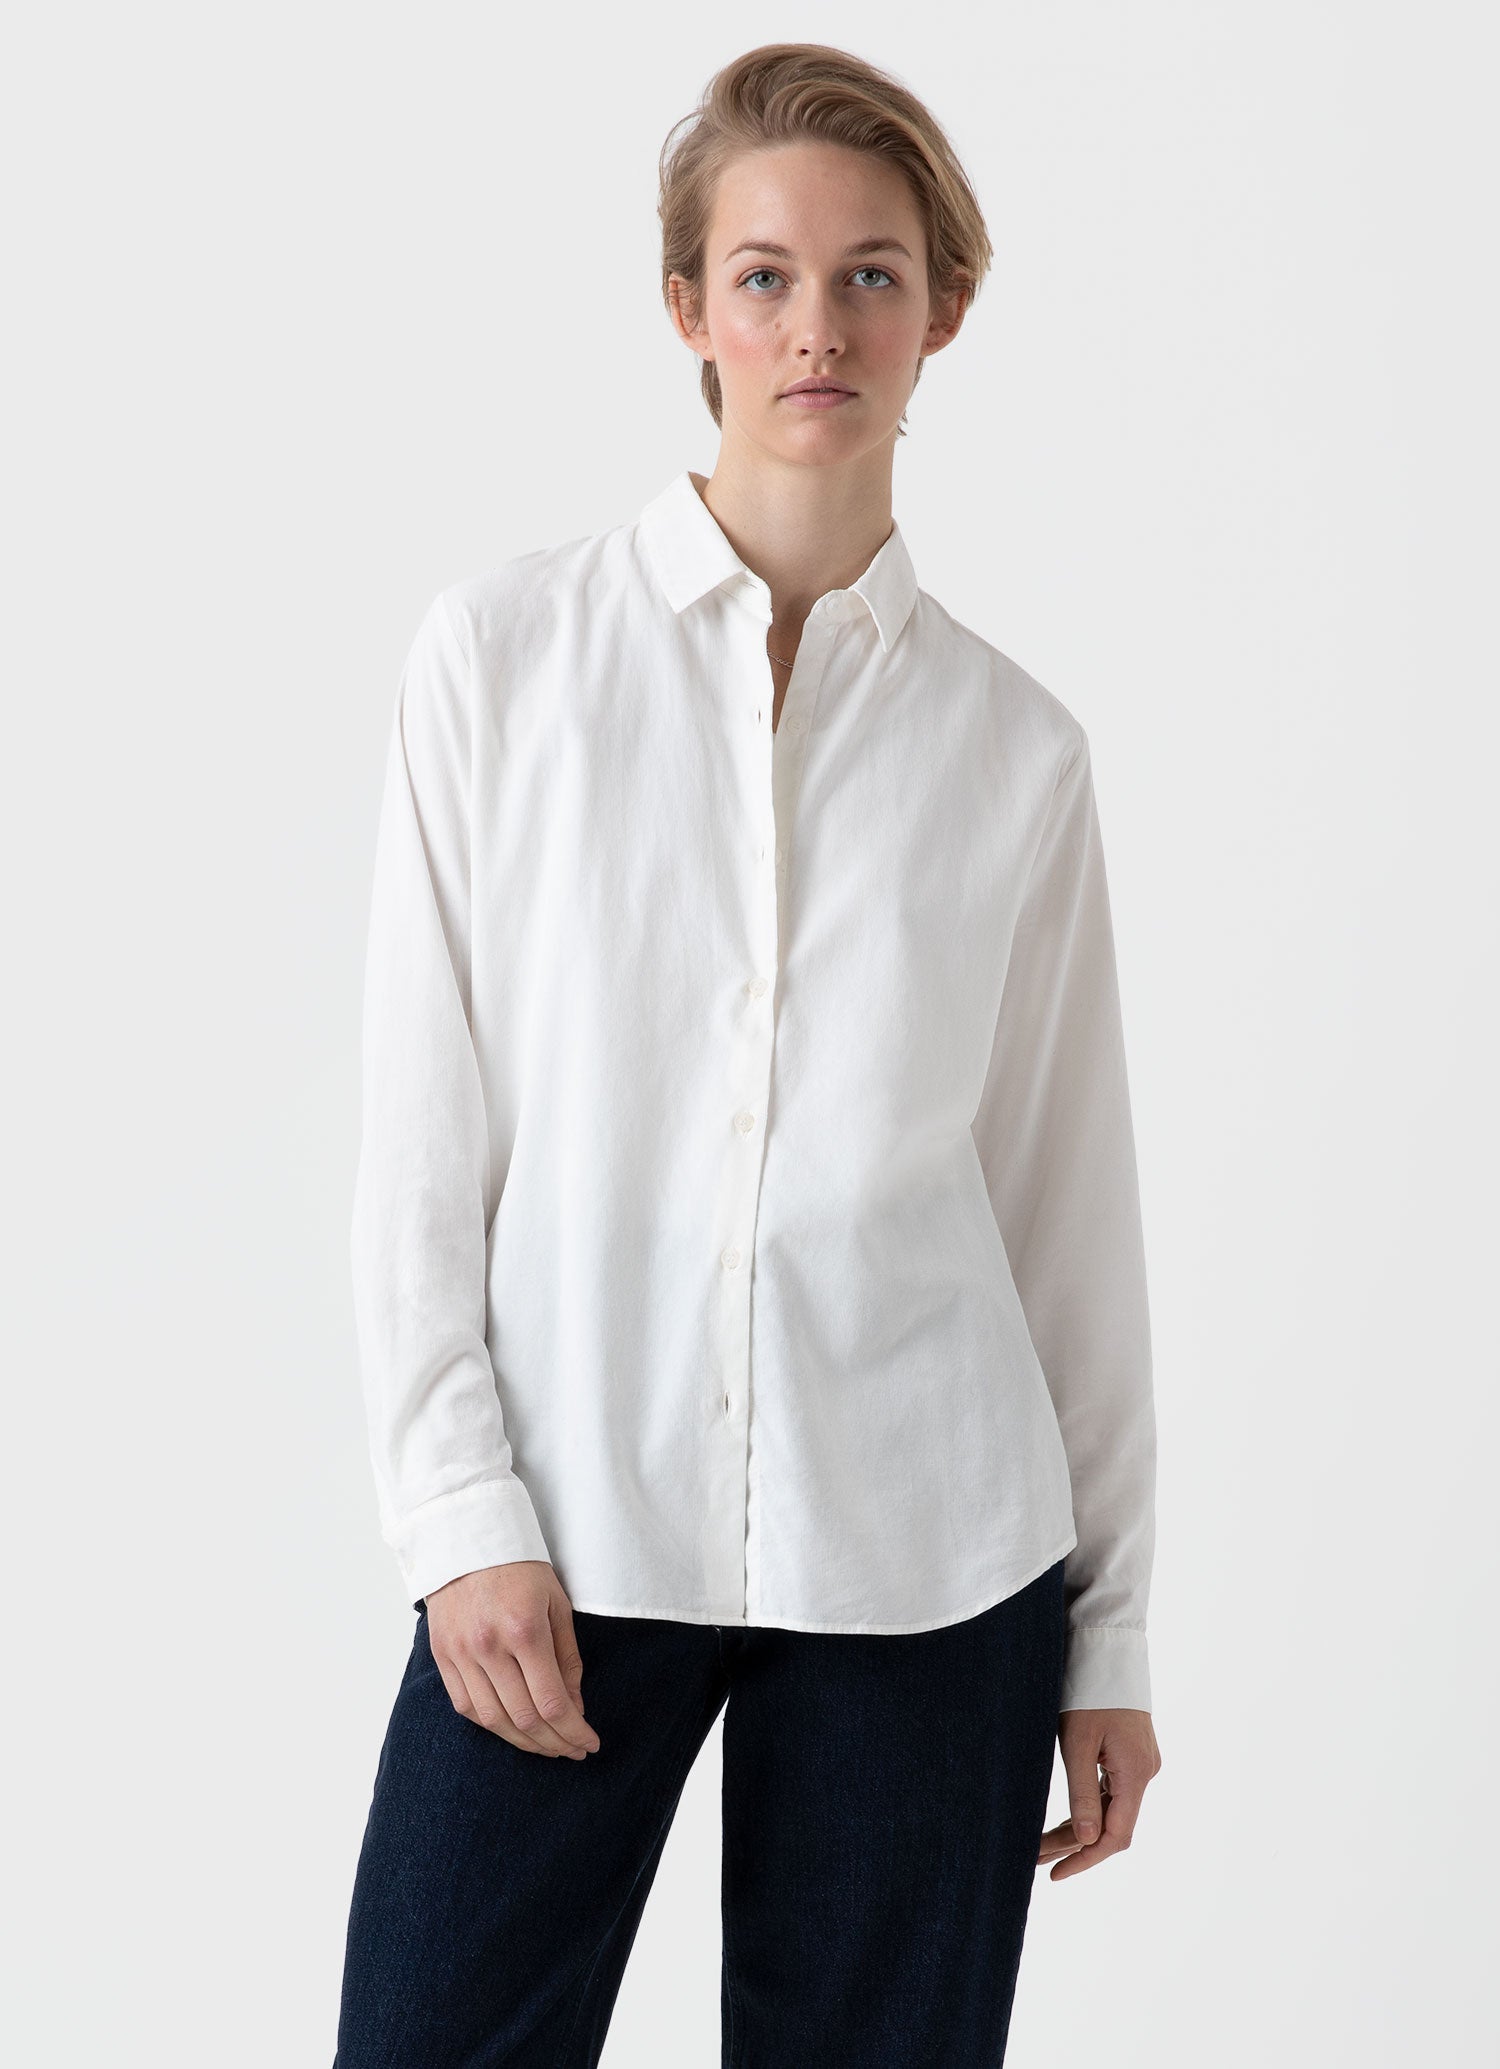 Women's Corduroy Shirt in Ecru | Sunspel